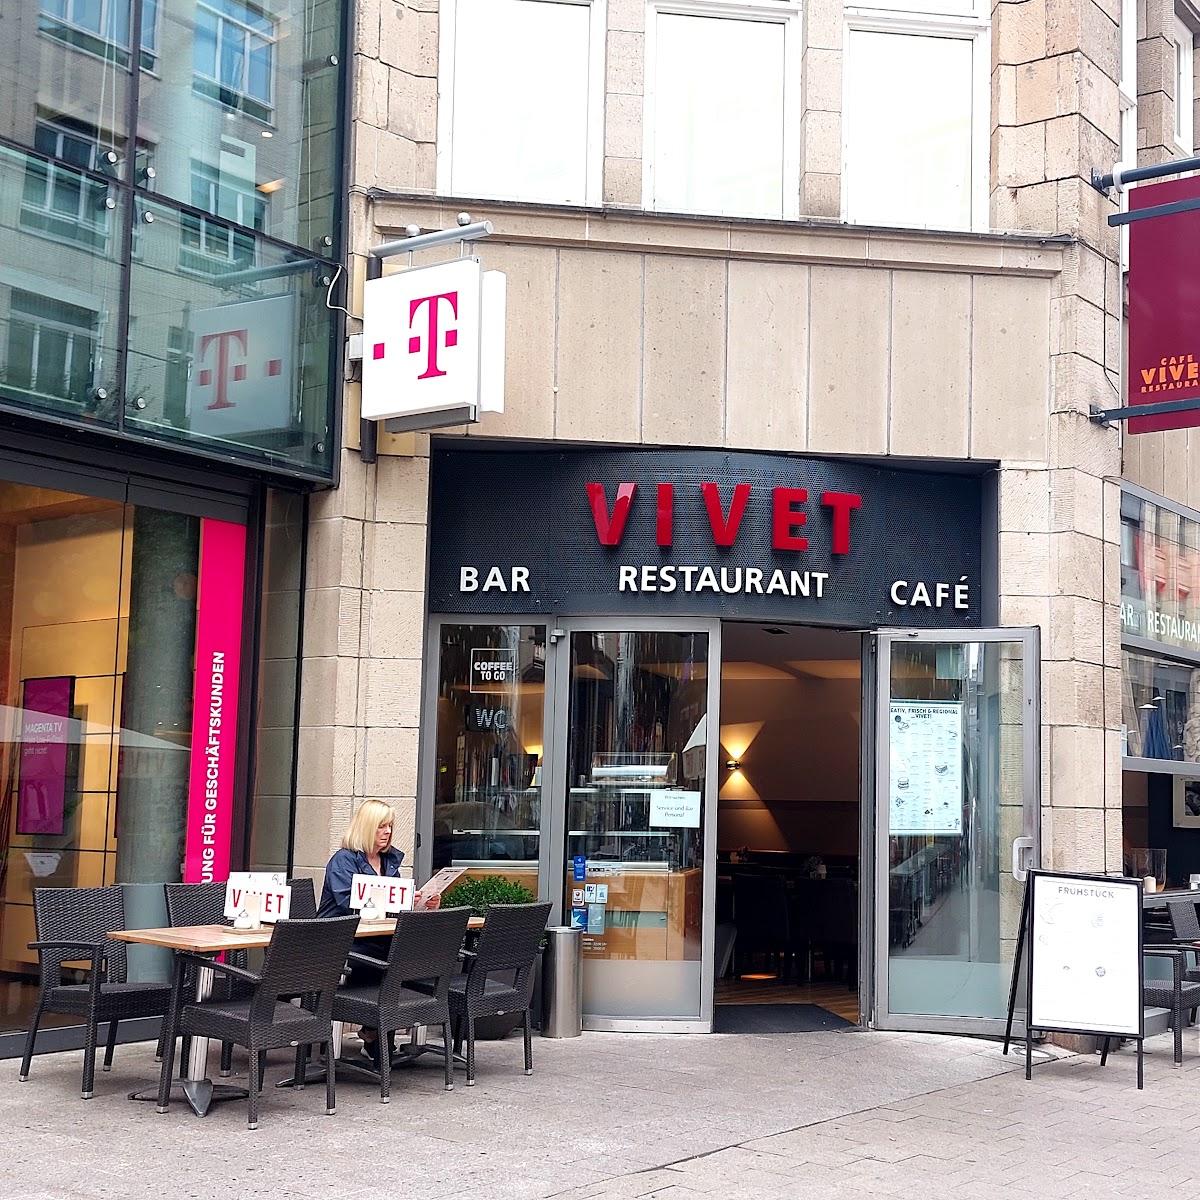 Restaurant "Vivet" in Hamburg